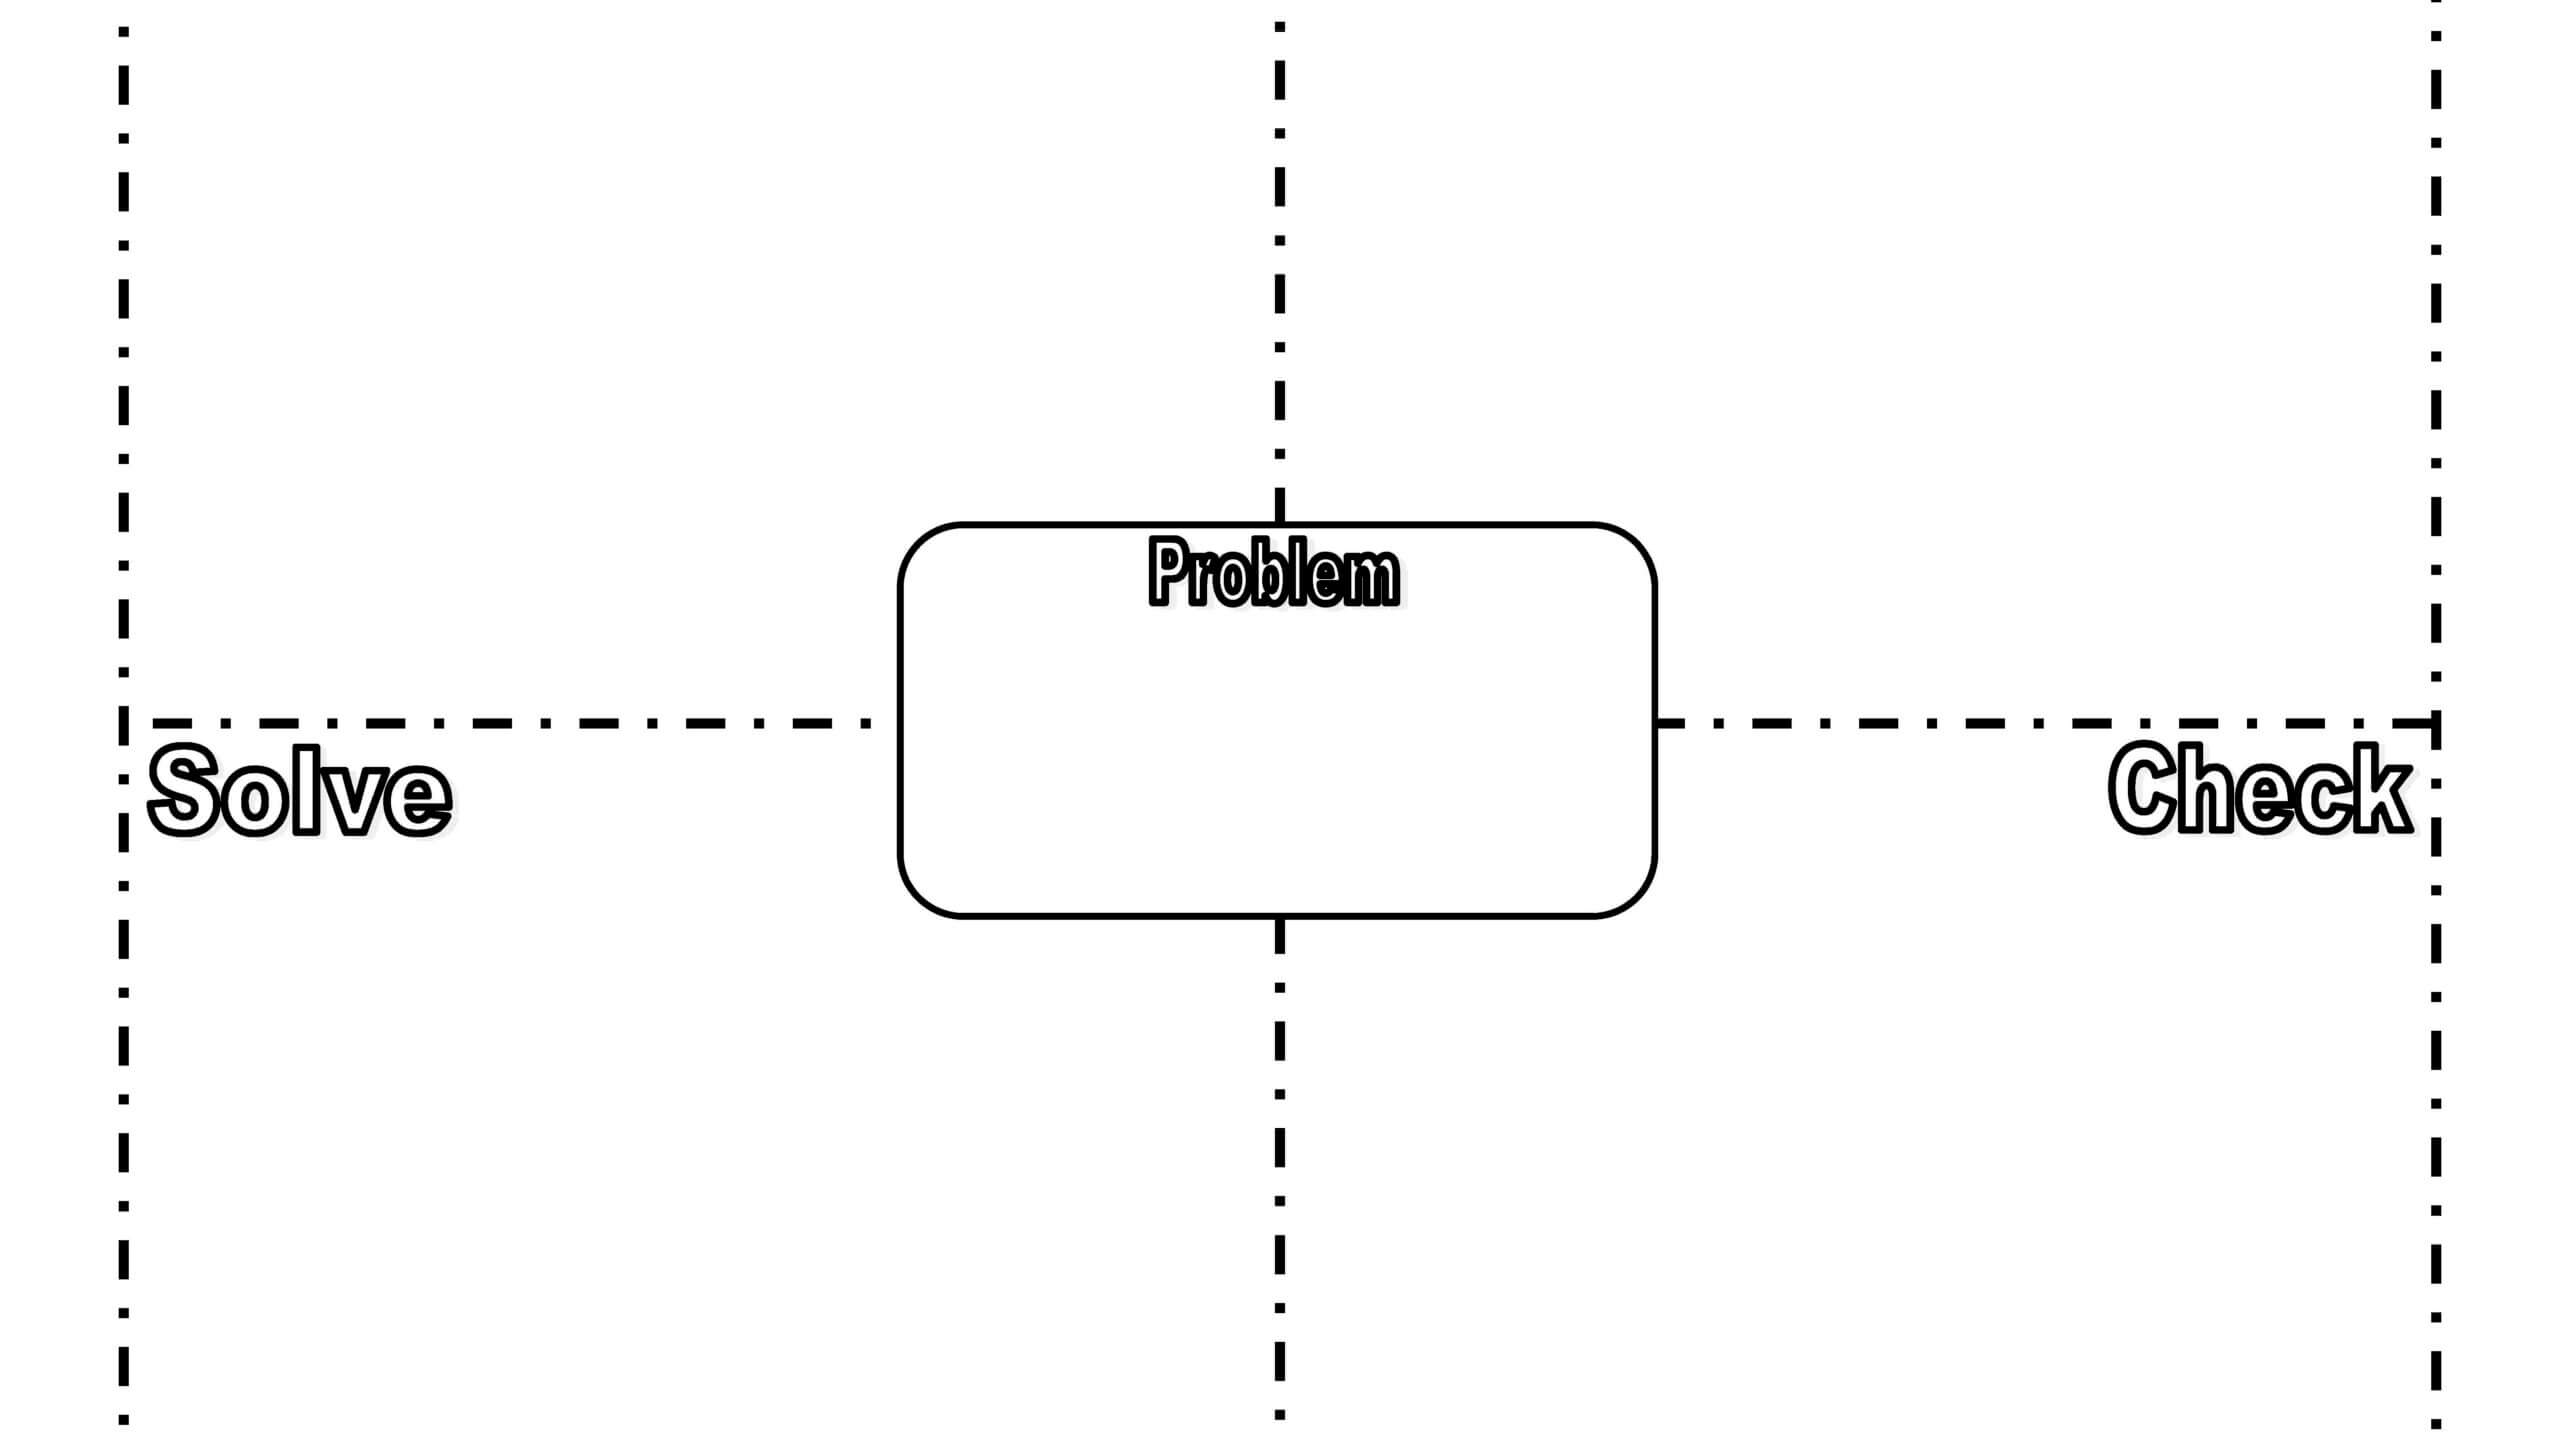 Using The Frayer Model For Problem Solving Intended For Blank Frayer Model Template